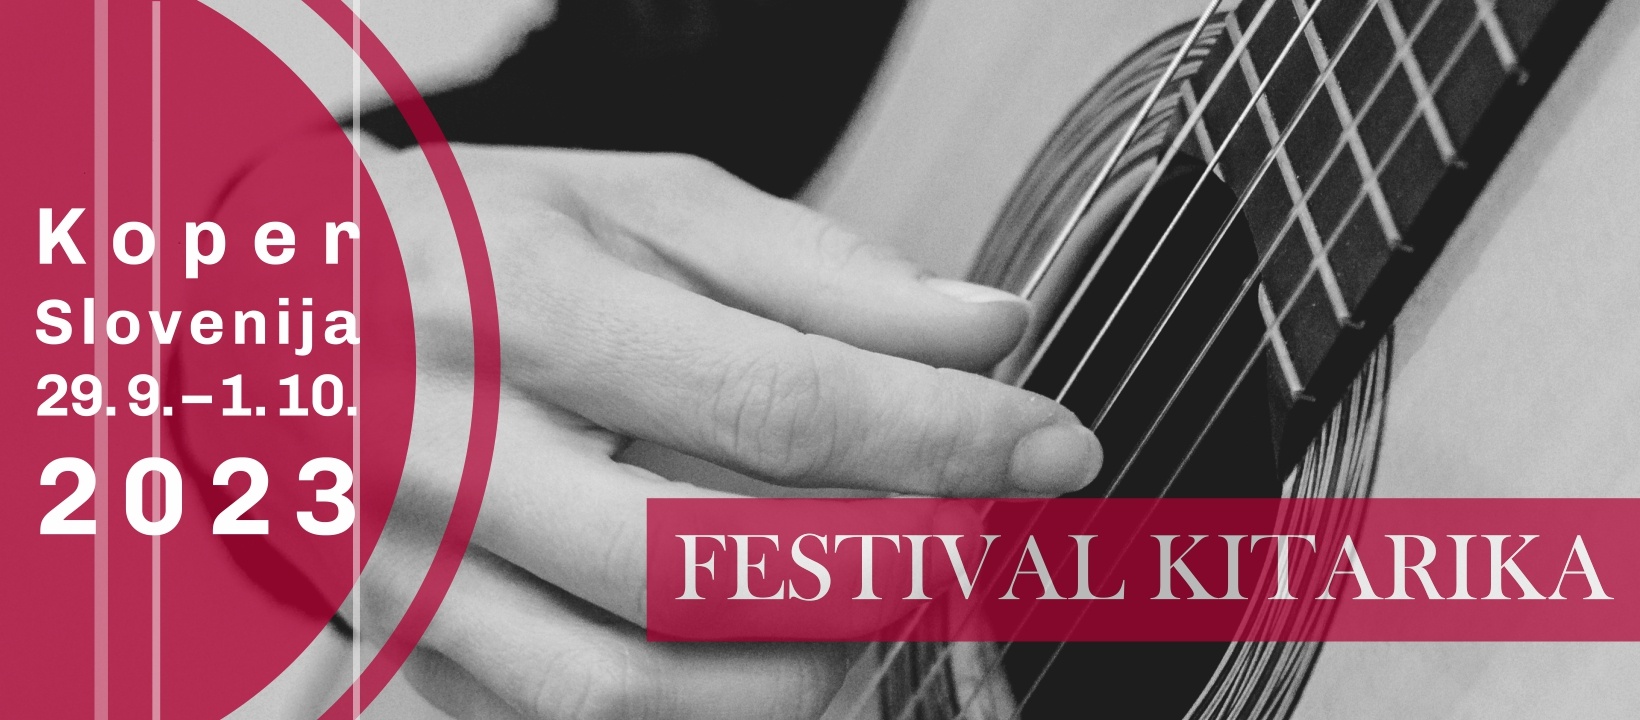 V Kopru se bodo na Festivalu Kitarika 2023 predstavili svetovni virtuozi